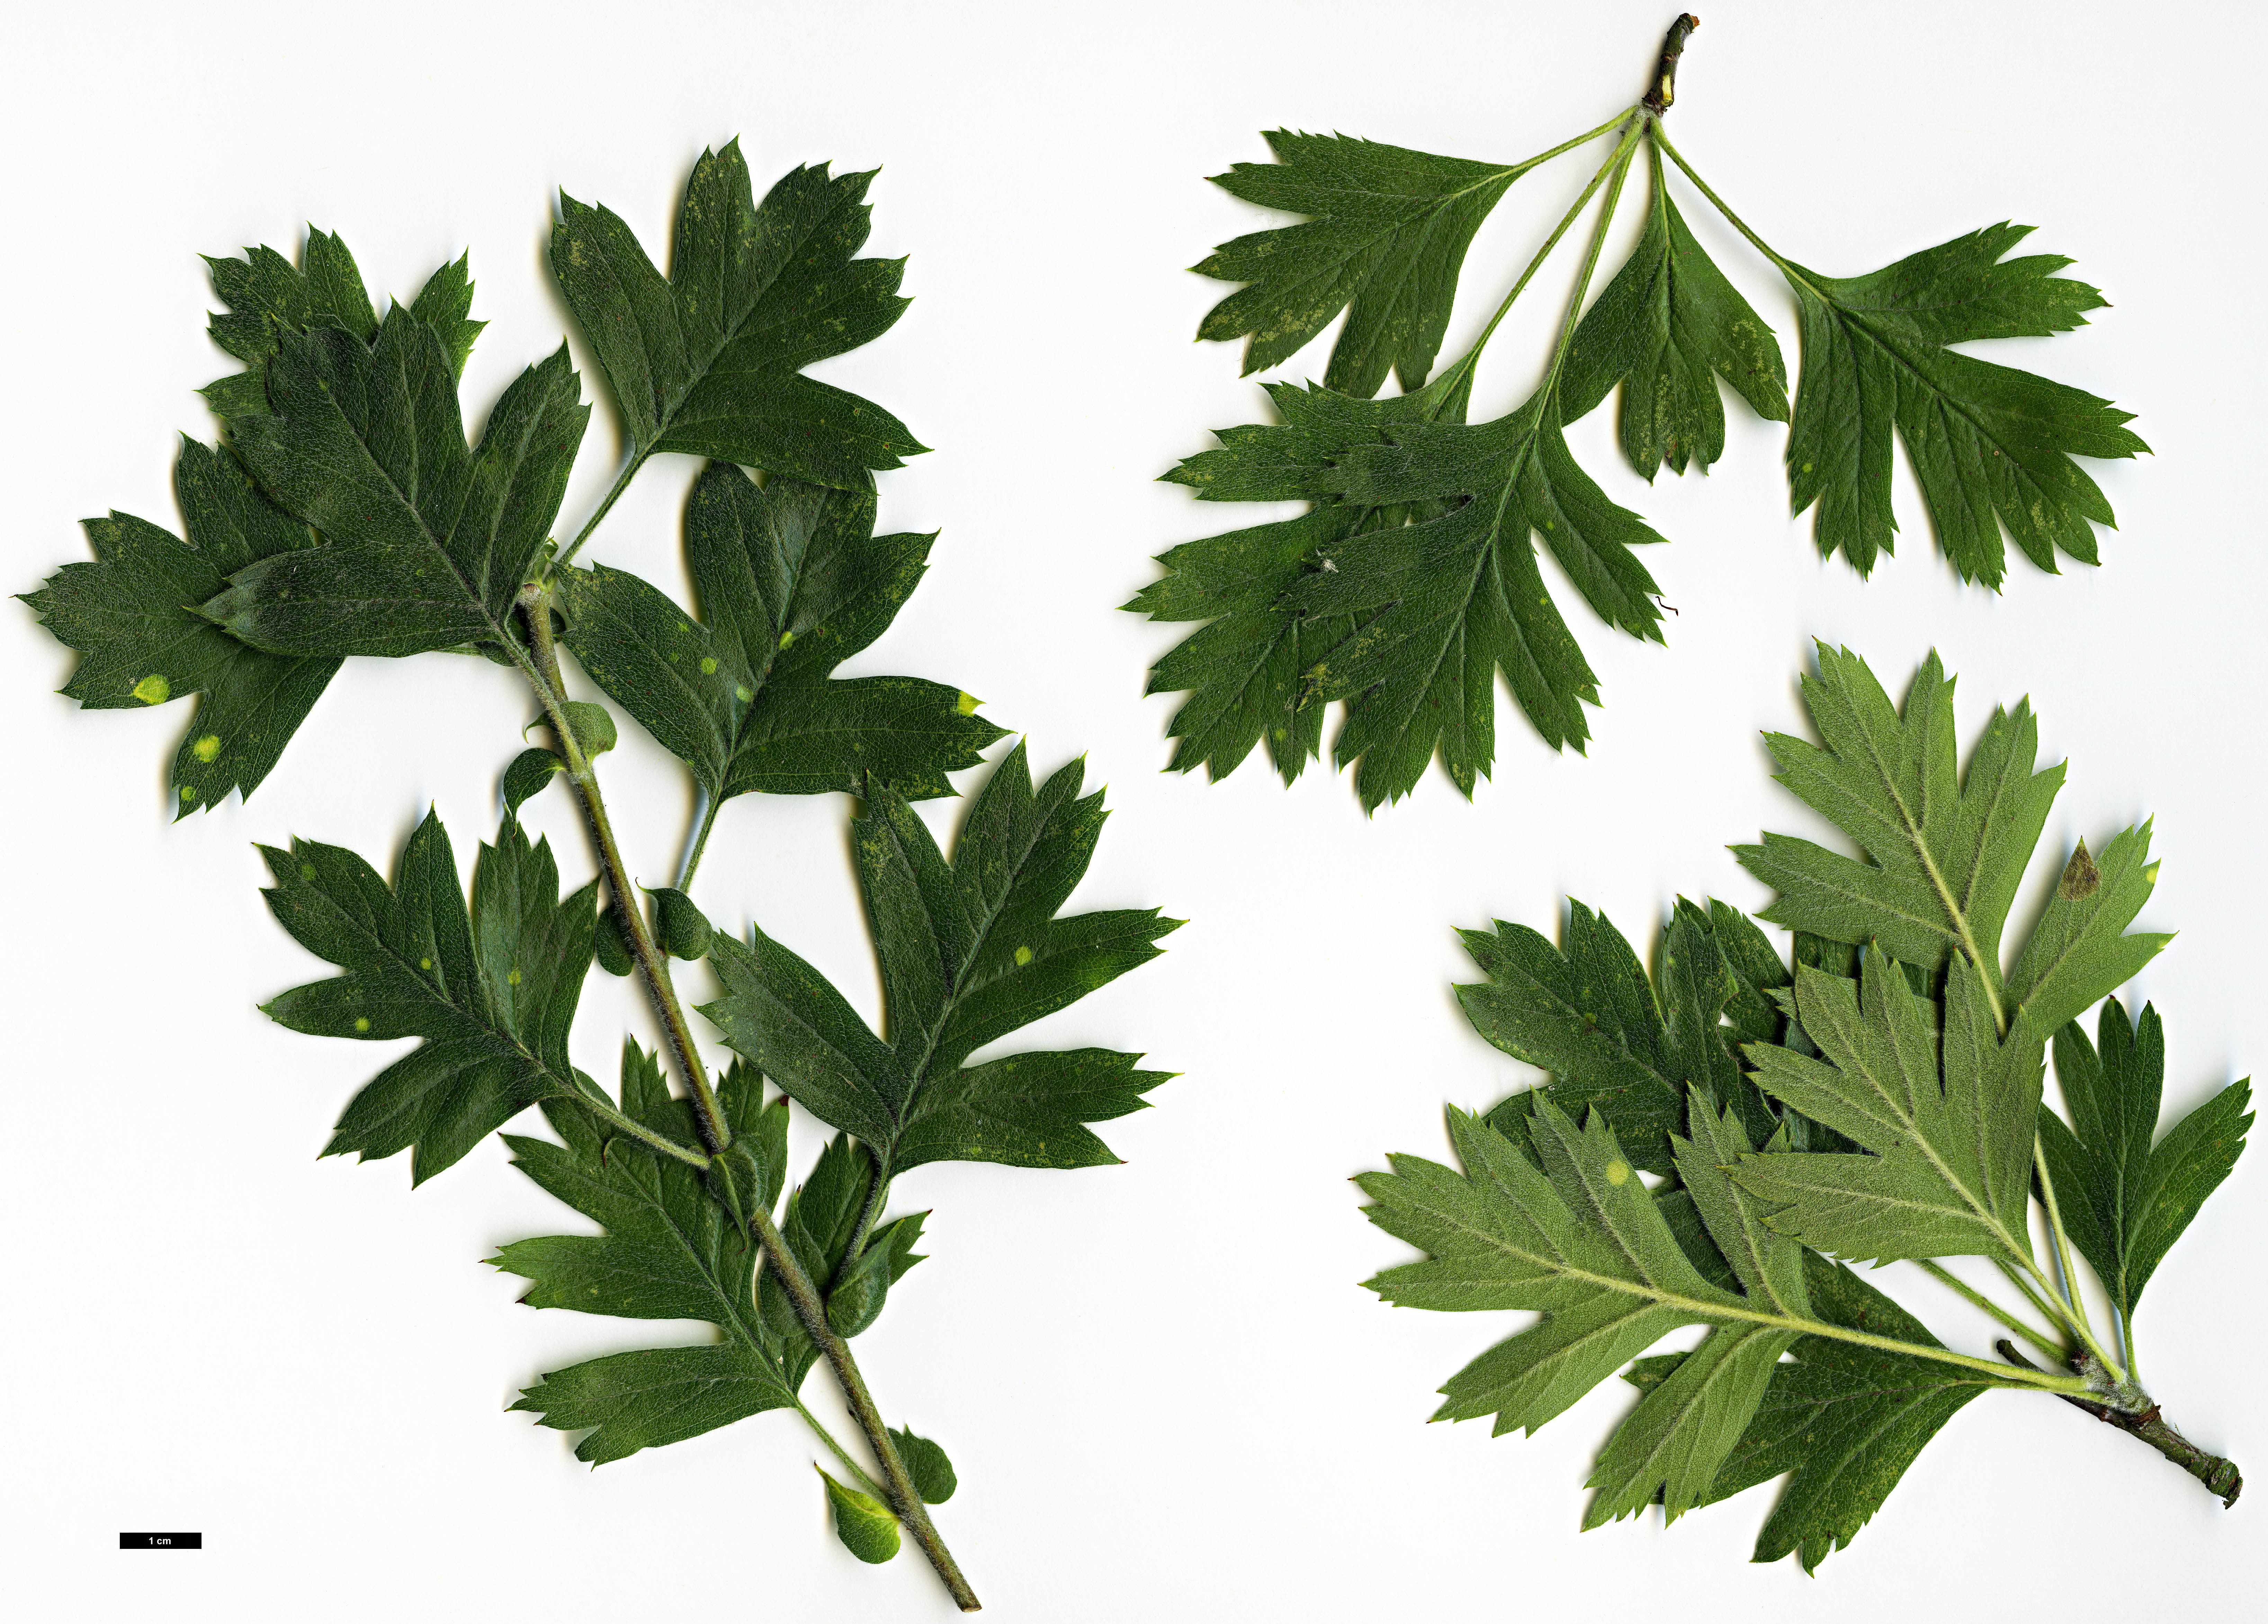 High resolution image: Family: Rosaceae - Genus: Crataegus - Taxon: schraederiana